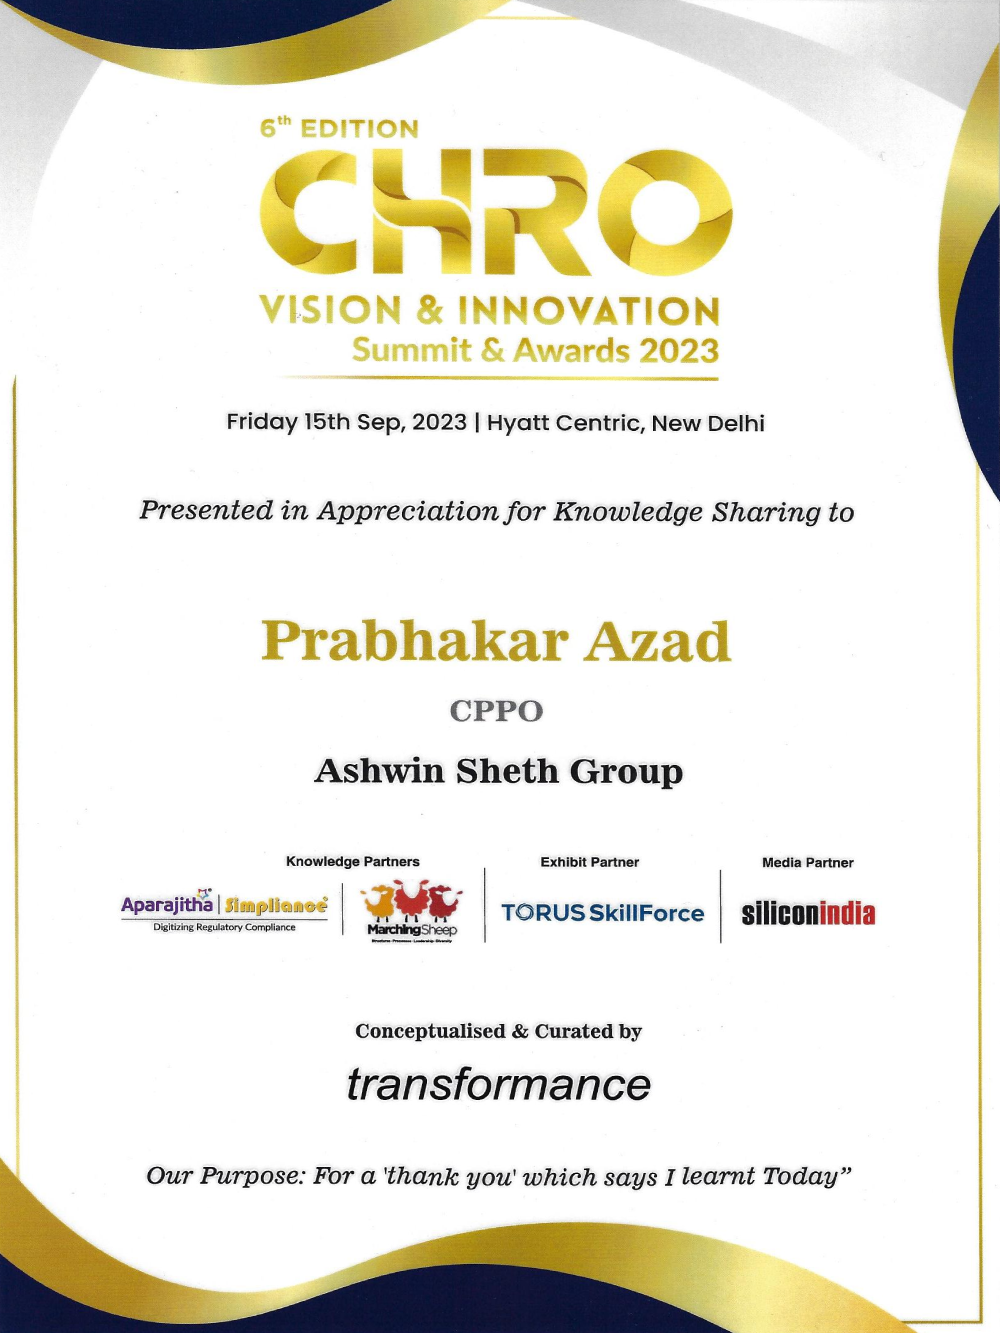 Prabhakar Azad - CHRO Vision & Innovation Award and Summit